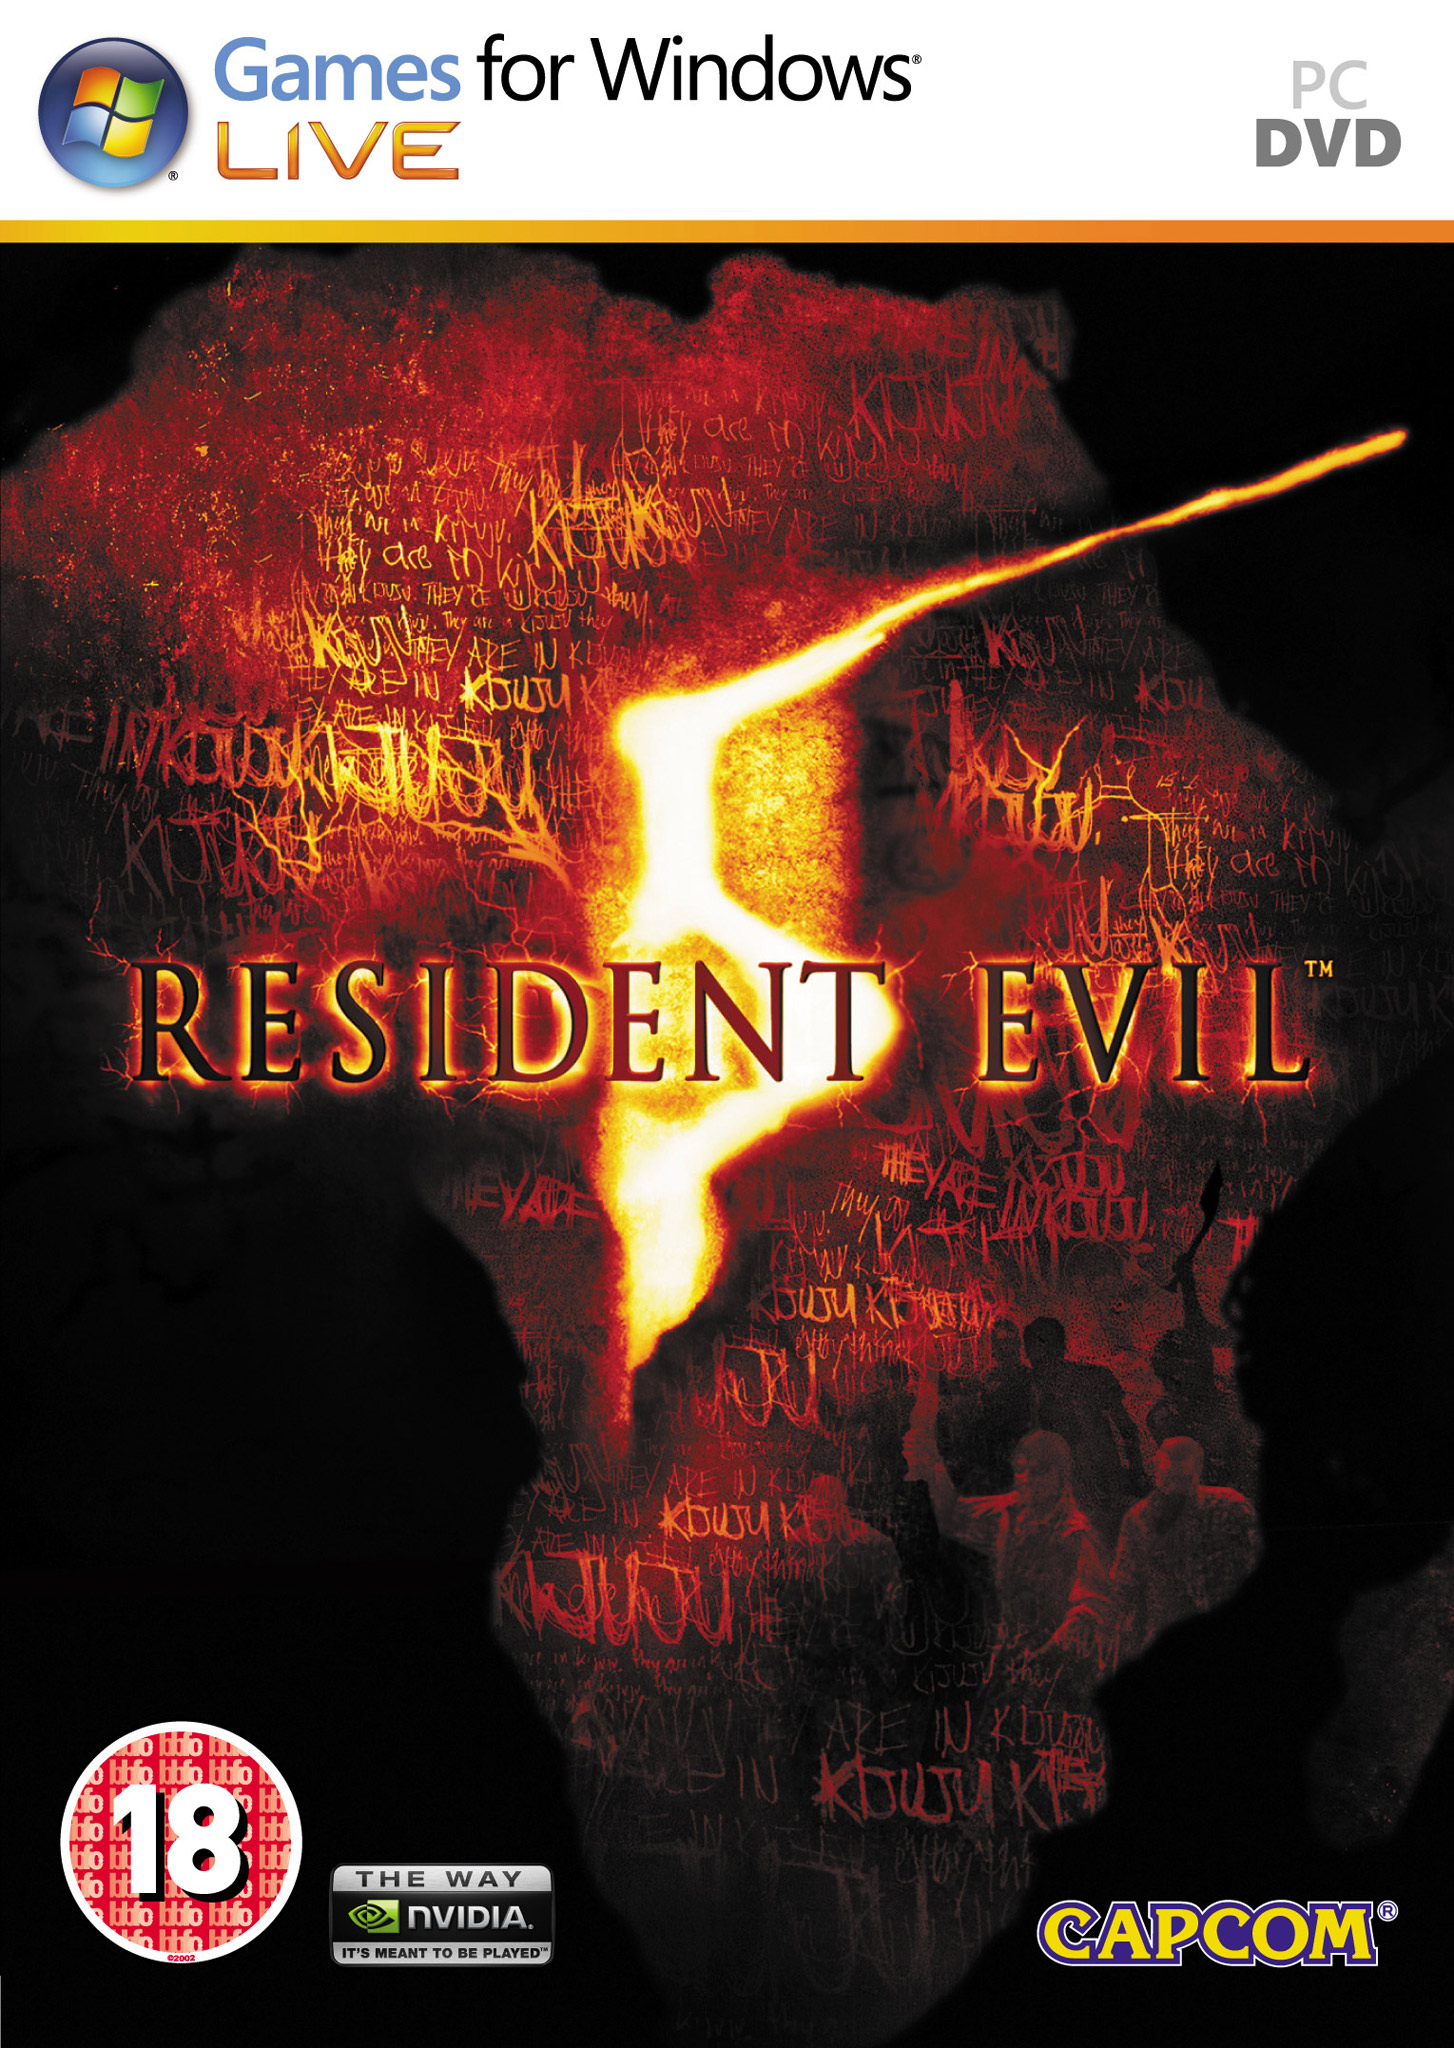 Artigo Traduzido: Q&A Resident Evil 5 (Capcom Europe)